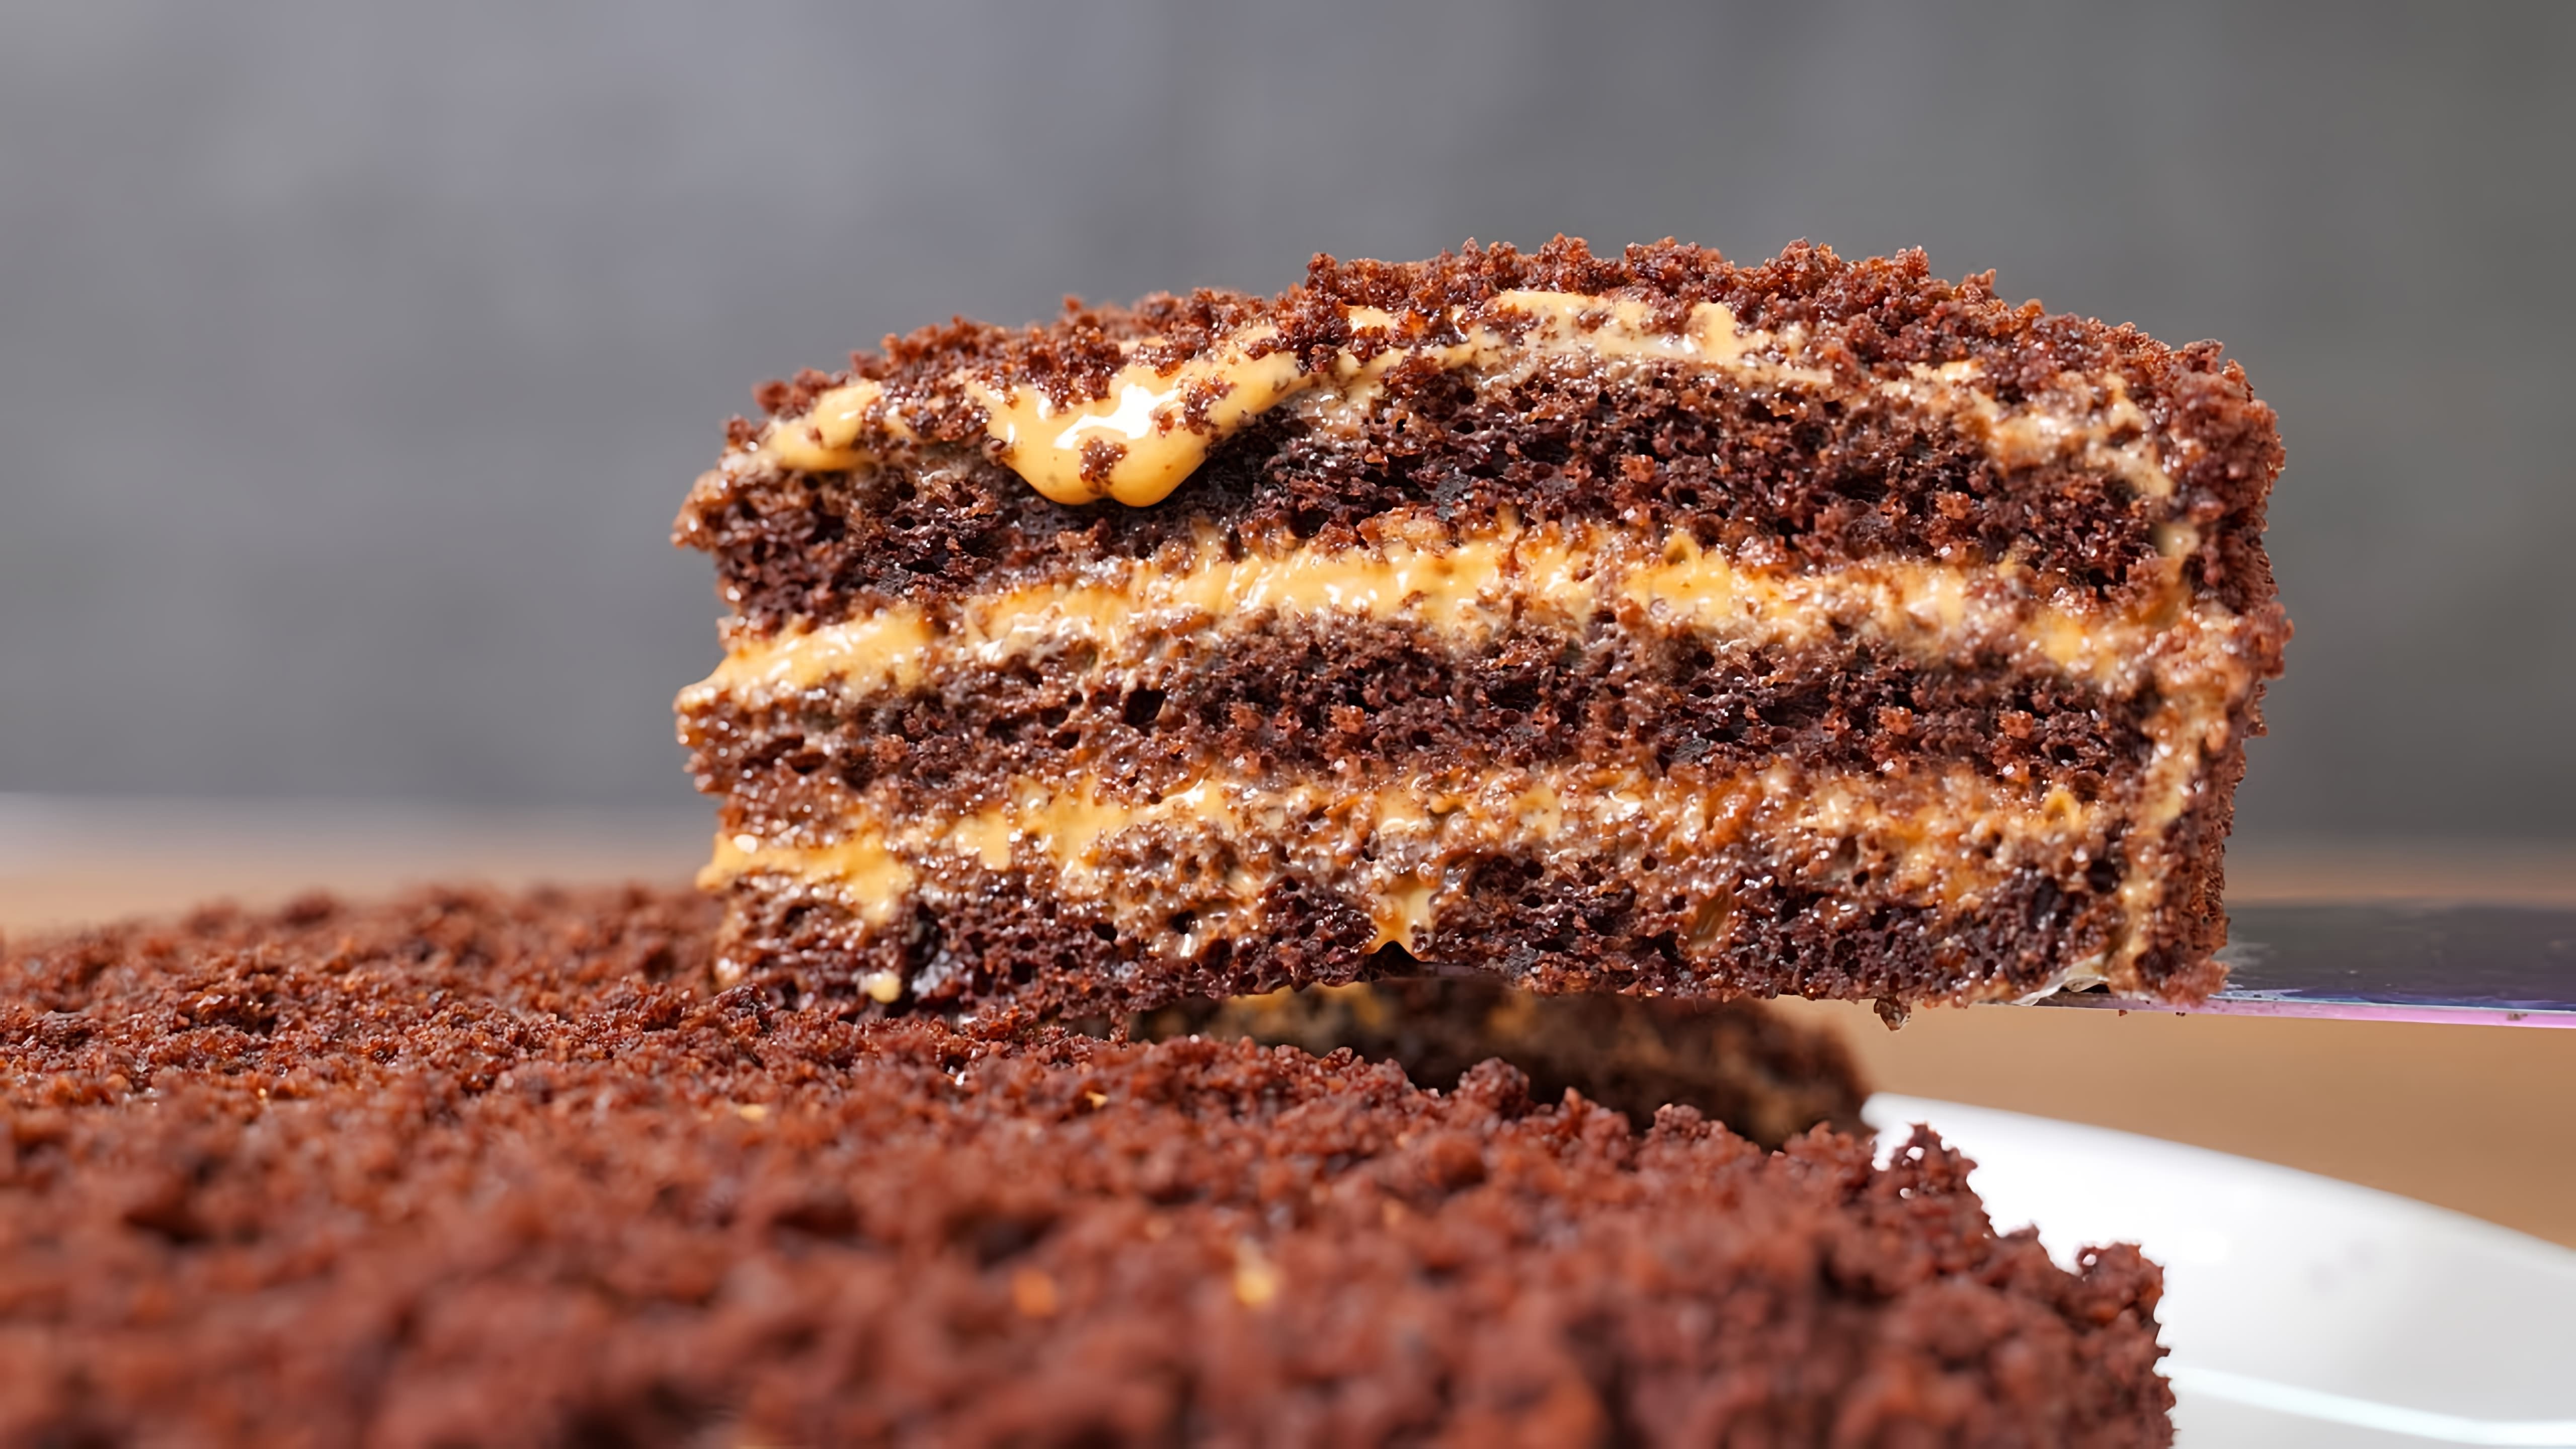 Торт "3 стакана" без миксера и весов! Очень простой и вкусный домашний шоколадный торт